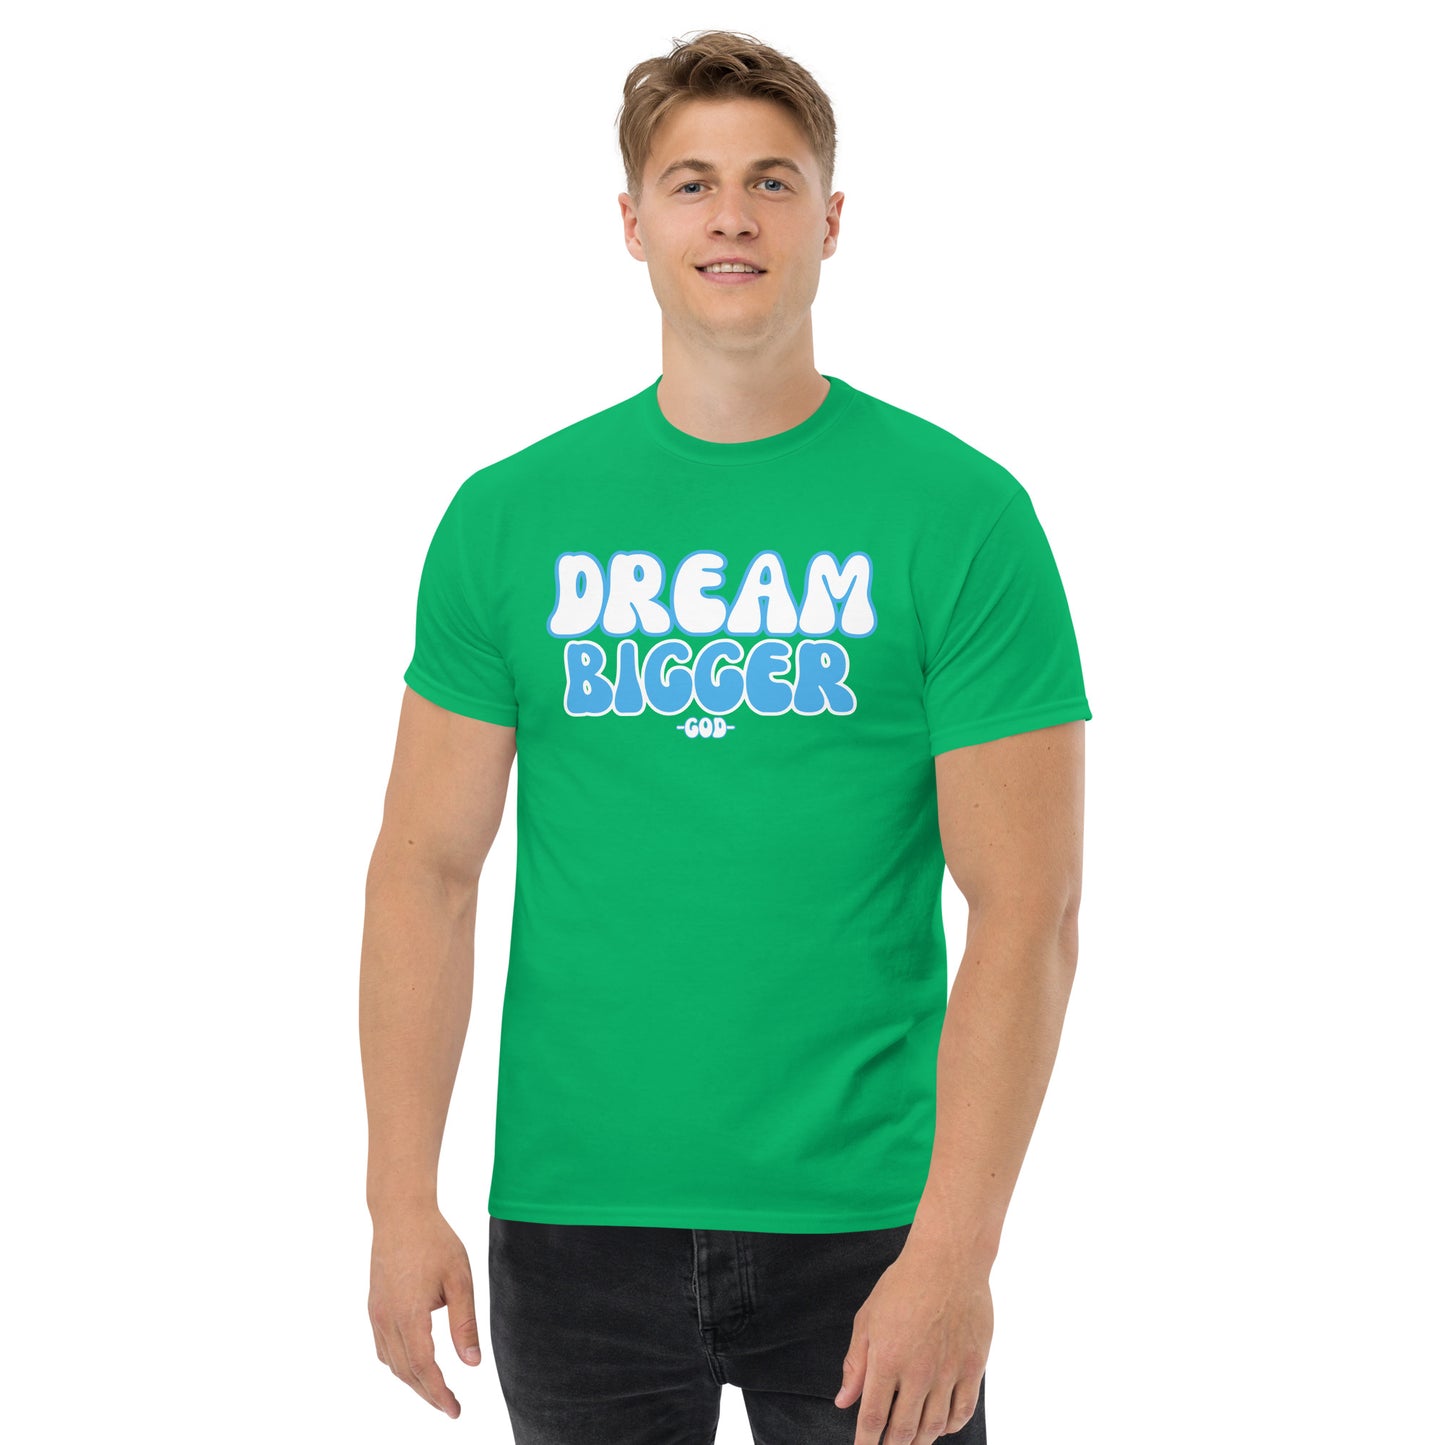 DREAM BIGGER -GOD- Men's classic tee